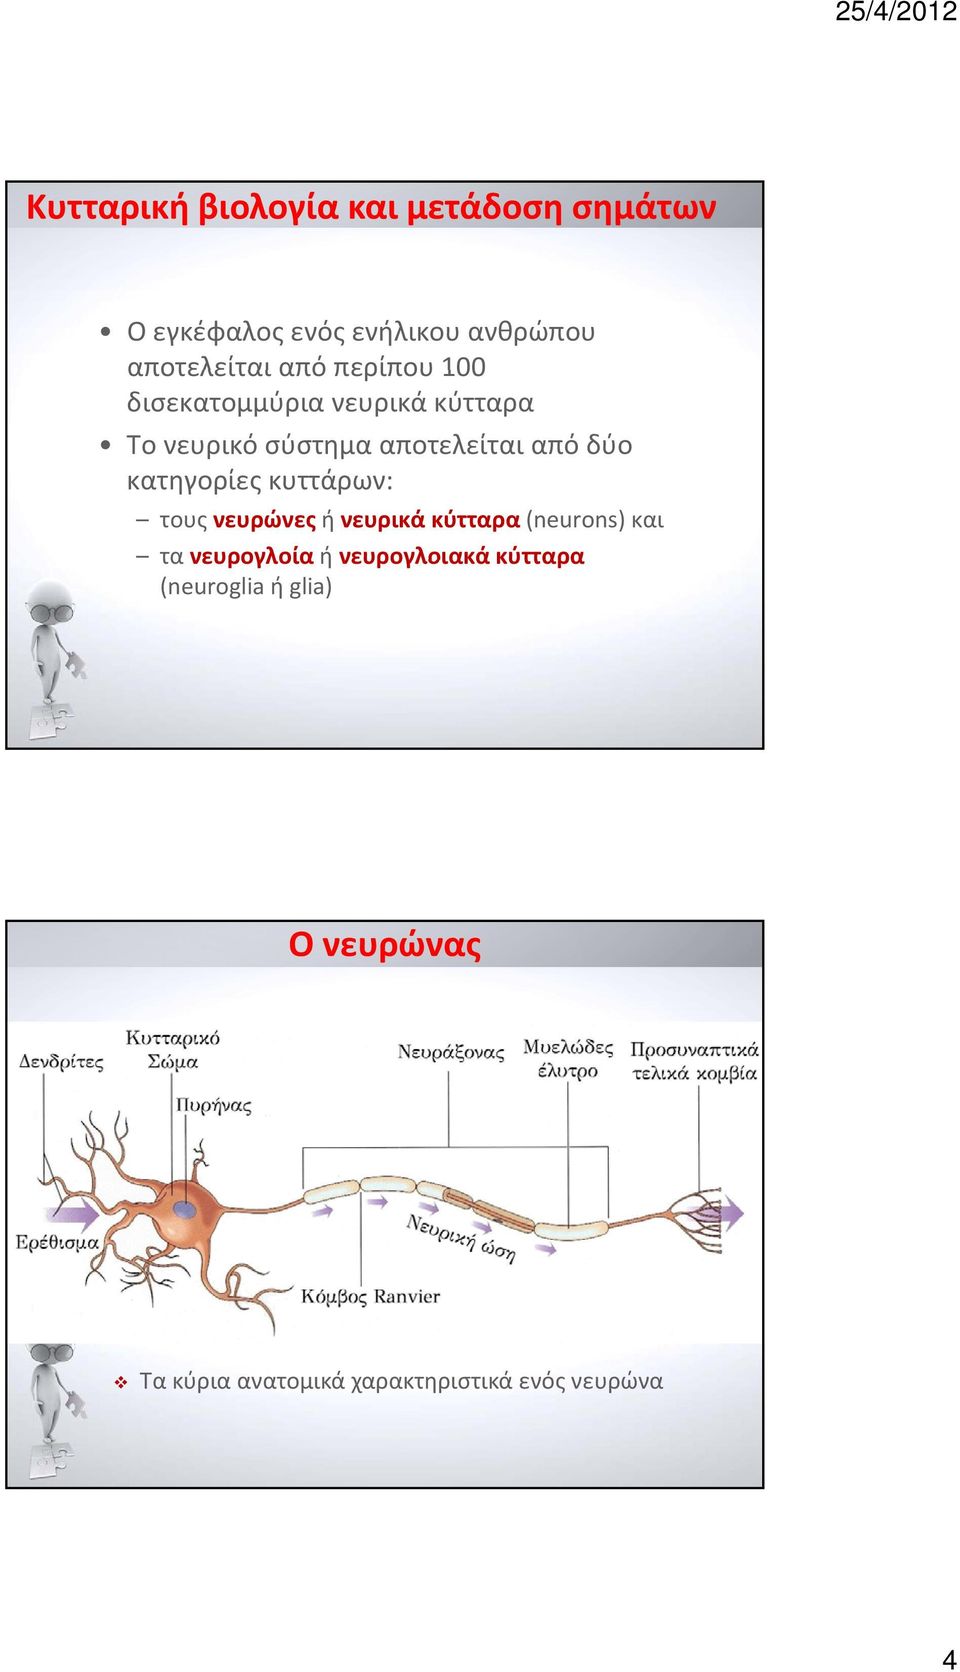 κατηγορίες κυττάρων: τους νευρώνες ή νευρικά κύτταρα (neurons) και τα νευρογλοία ή